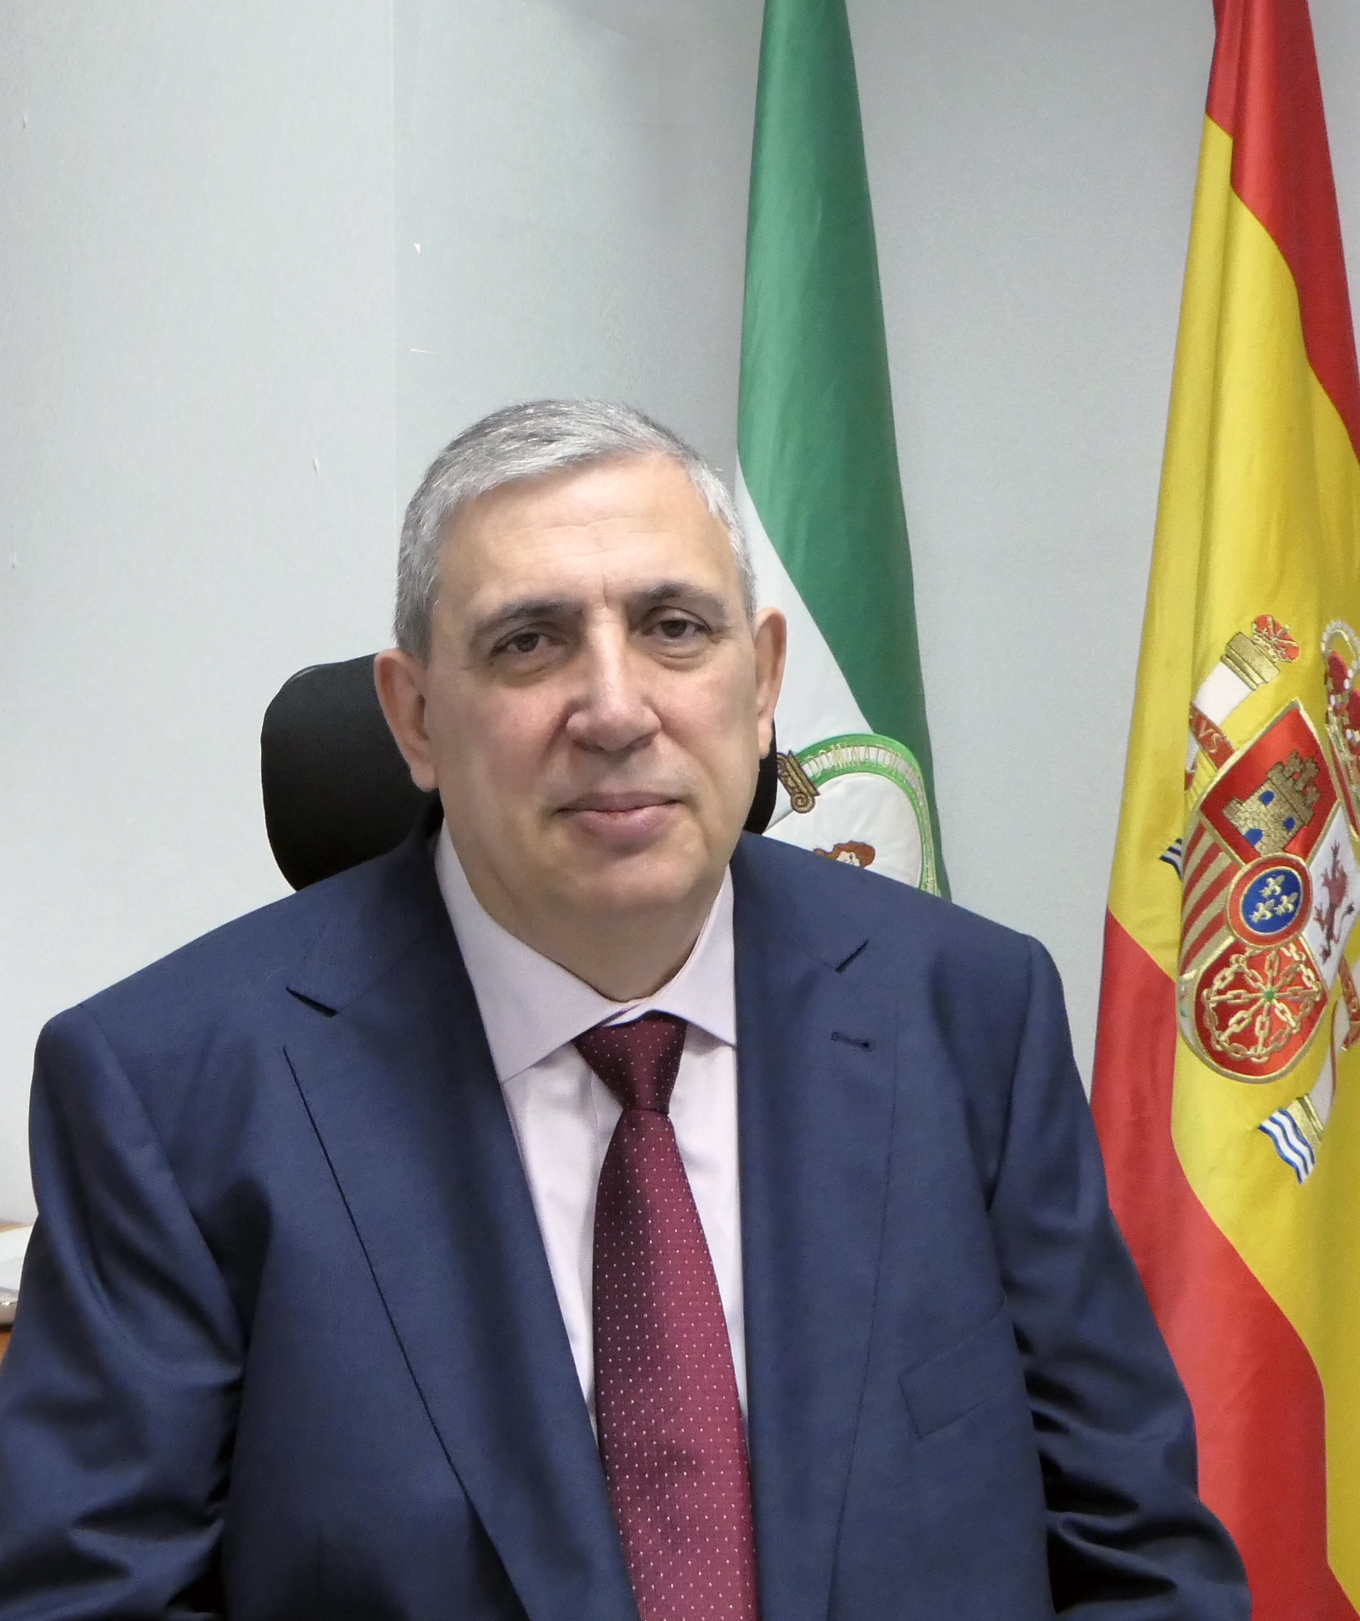 Antonio Tallante Ruiz, director general de Intermediación y Orientación Laboral